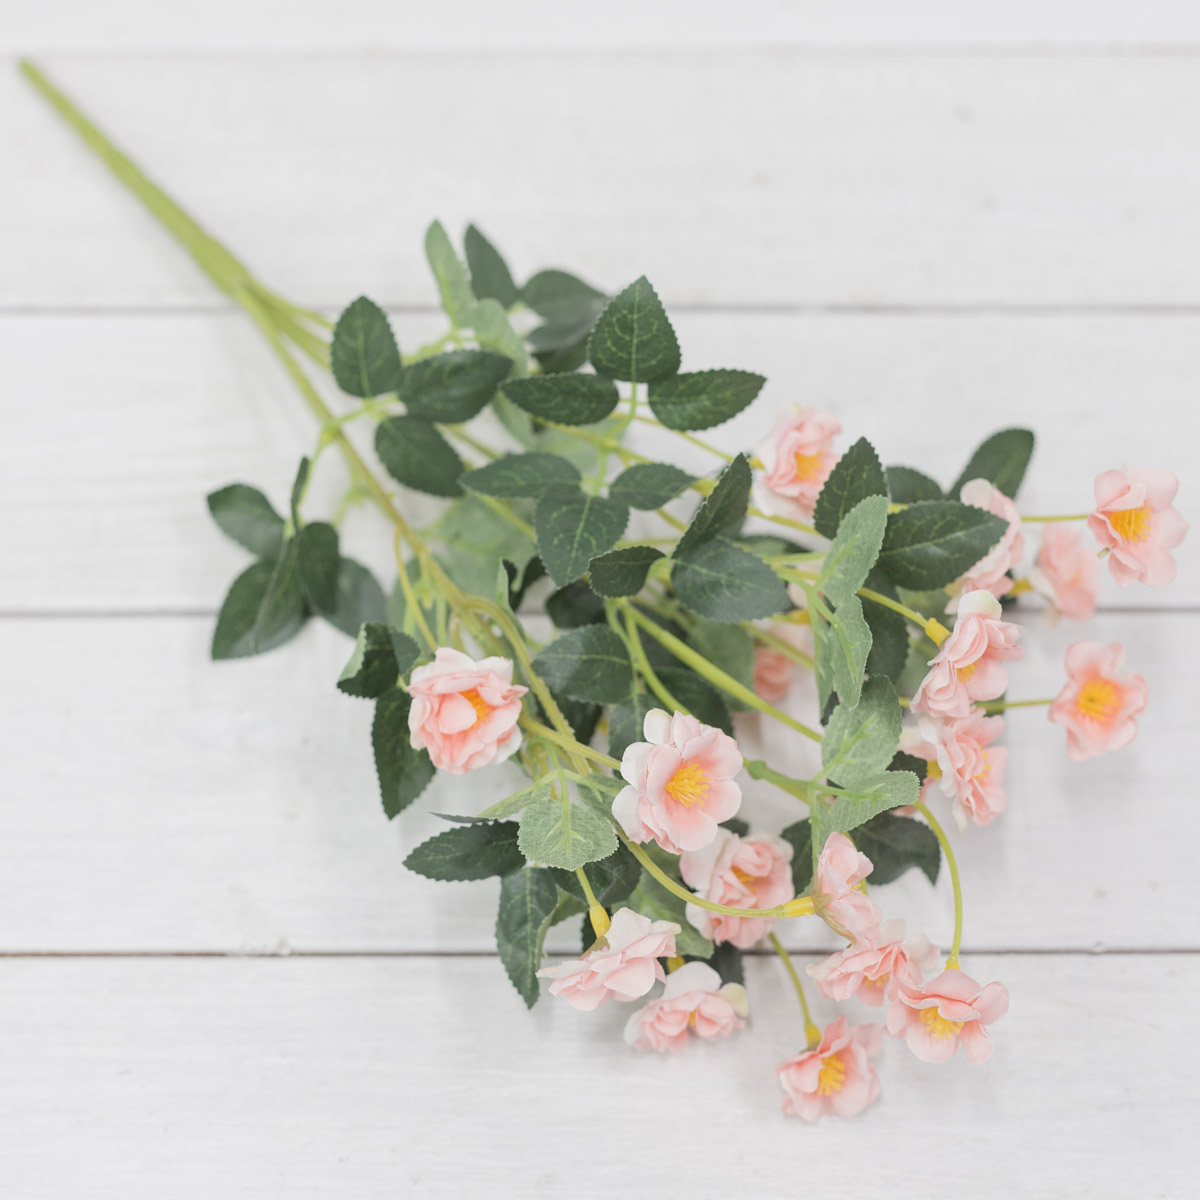 가든로즈 찔레장미 꽃 실크플라워 부쉬 핑크 테이블에놓은사진